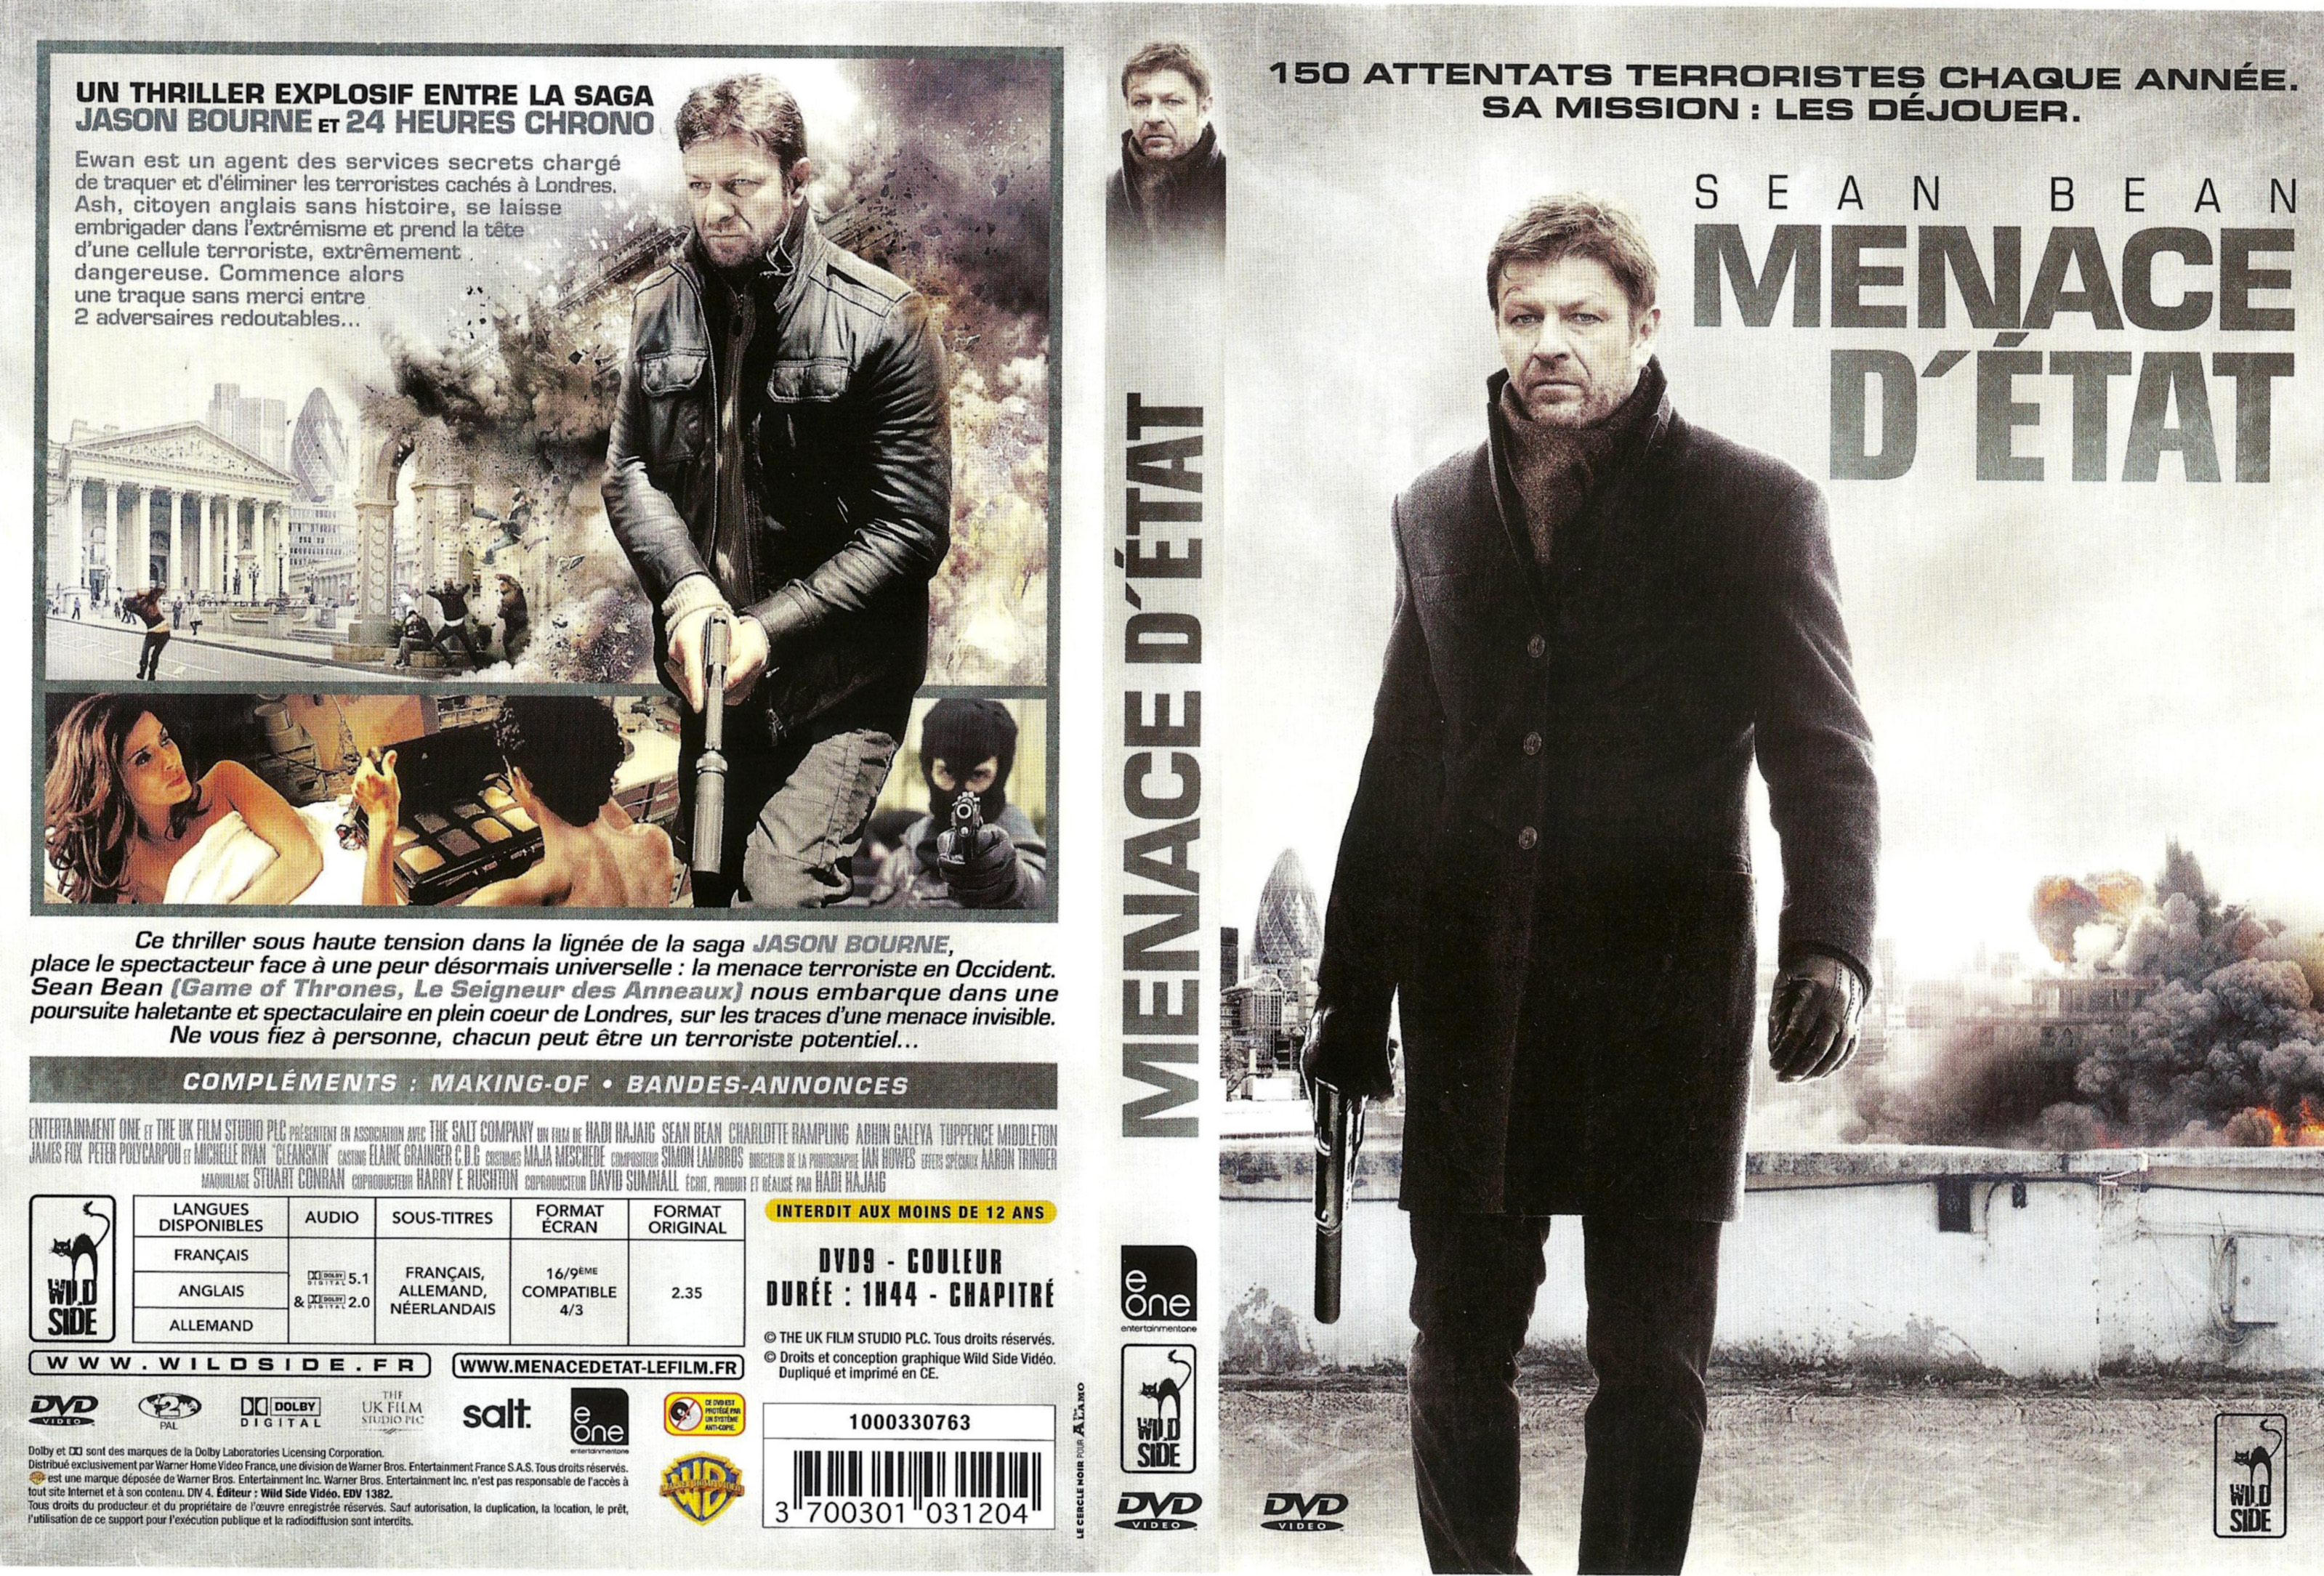 Jaquette DVD Menace d